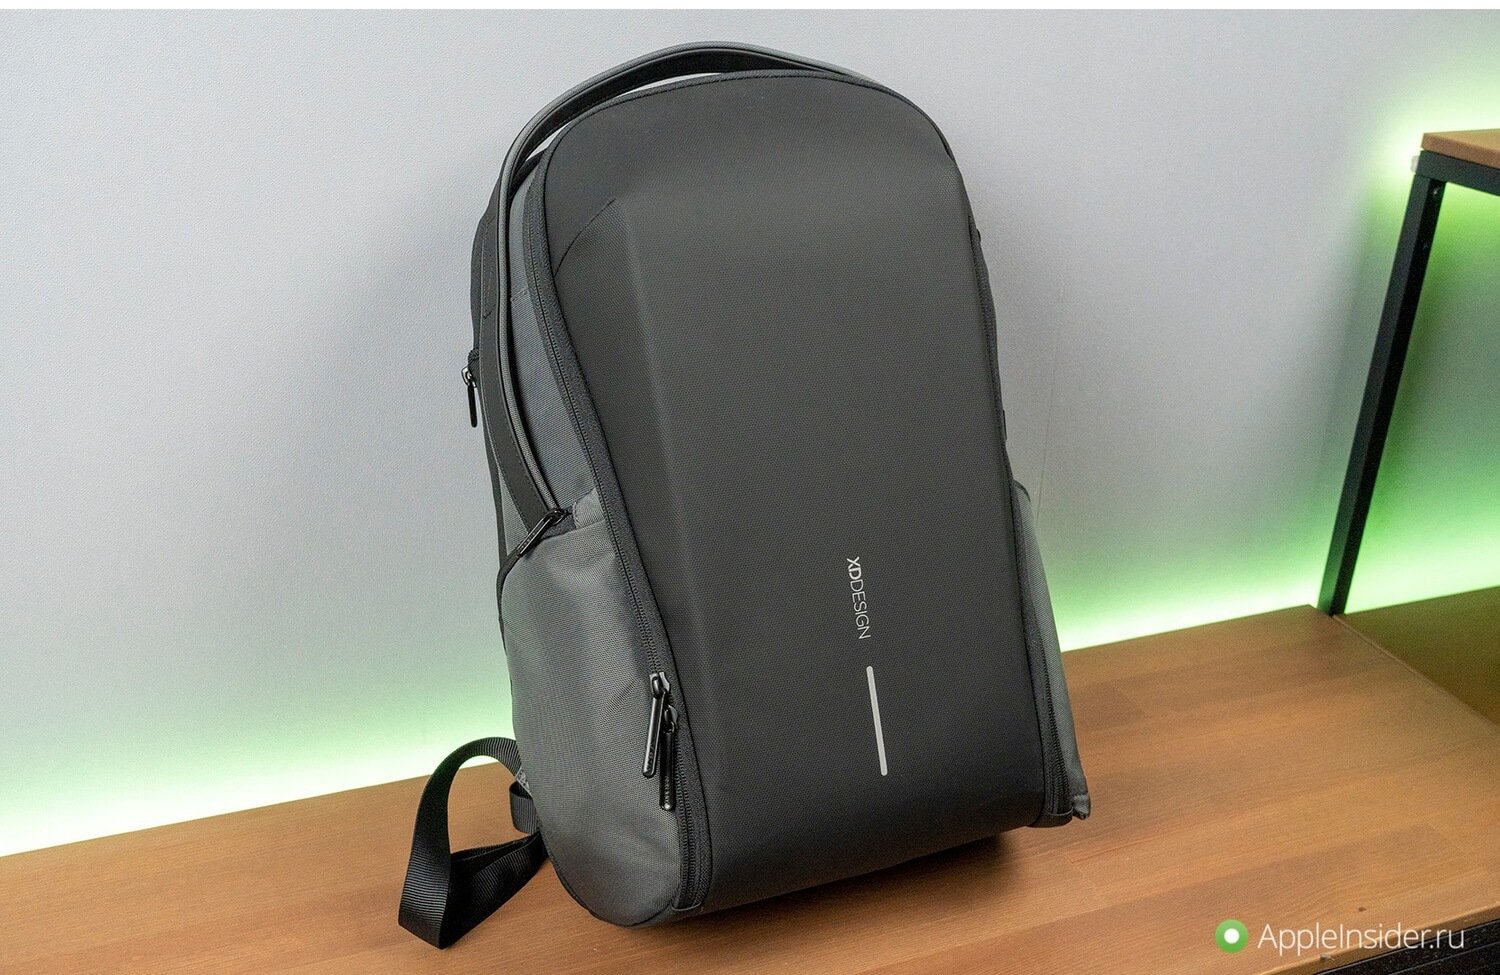 Походил неделю с самым технологичным рюкзаком — обзор XD Design Bizz Backpack. XD Design Bizz Backpack не только стильный, но и практичный. Фото.